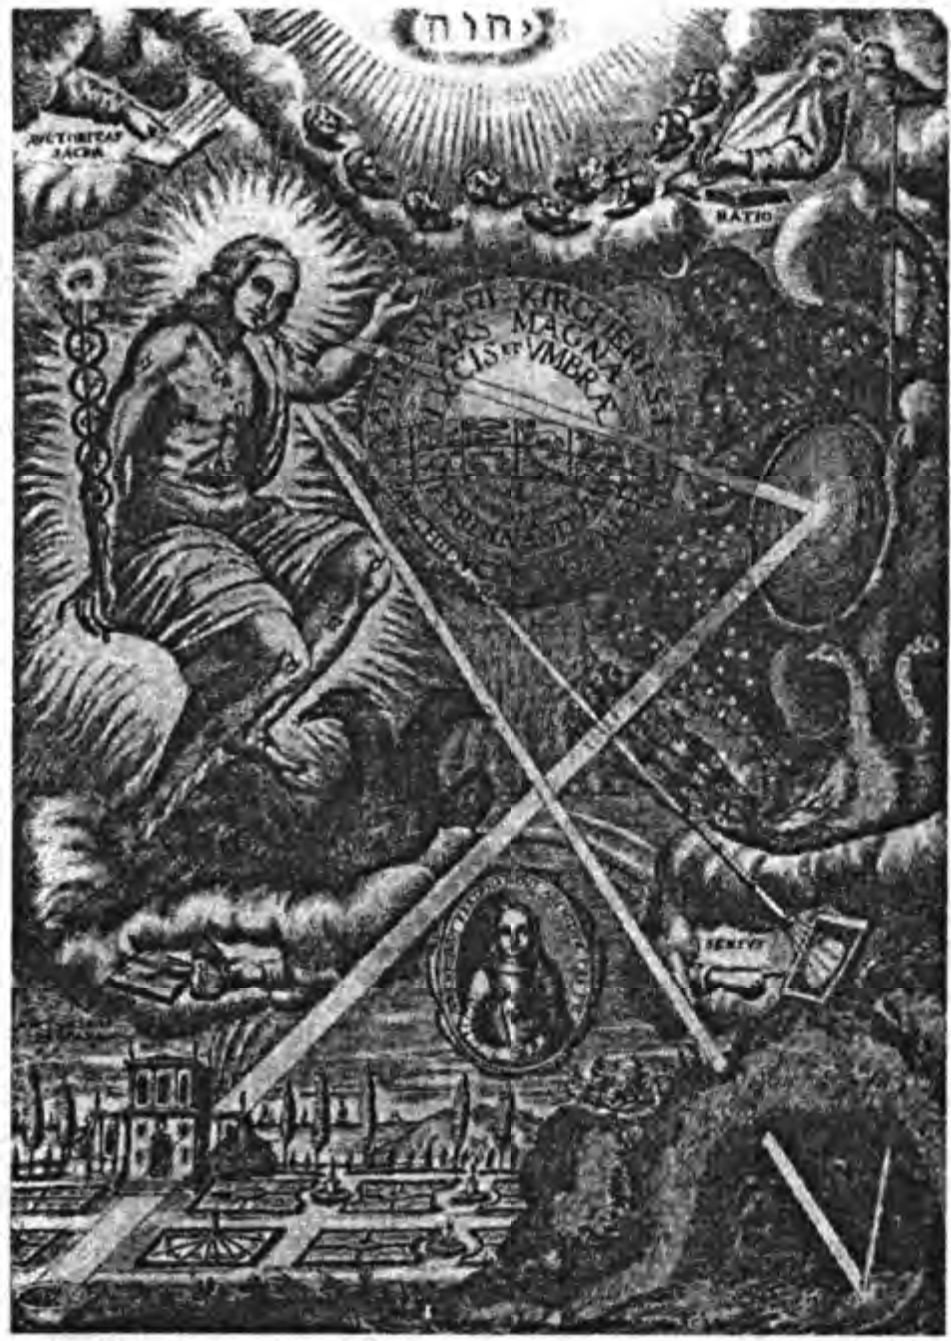 Драматичное, на первый взгляд, изображение трехчастной Вселенной Герметической традиции: Бог и его ангелы населяют высшие небеса, в то время, как фигура, явно напоминающая Христа, управляет Зодиаком, который освещает своими лучами мир людей, управляемый мирскими правителями. Из «Арс Магна Луцис» Атанасиуса Кирхера, 1646 г. (Британская Библиотека)